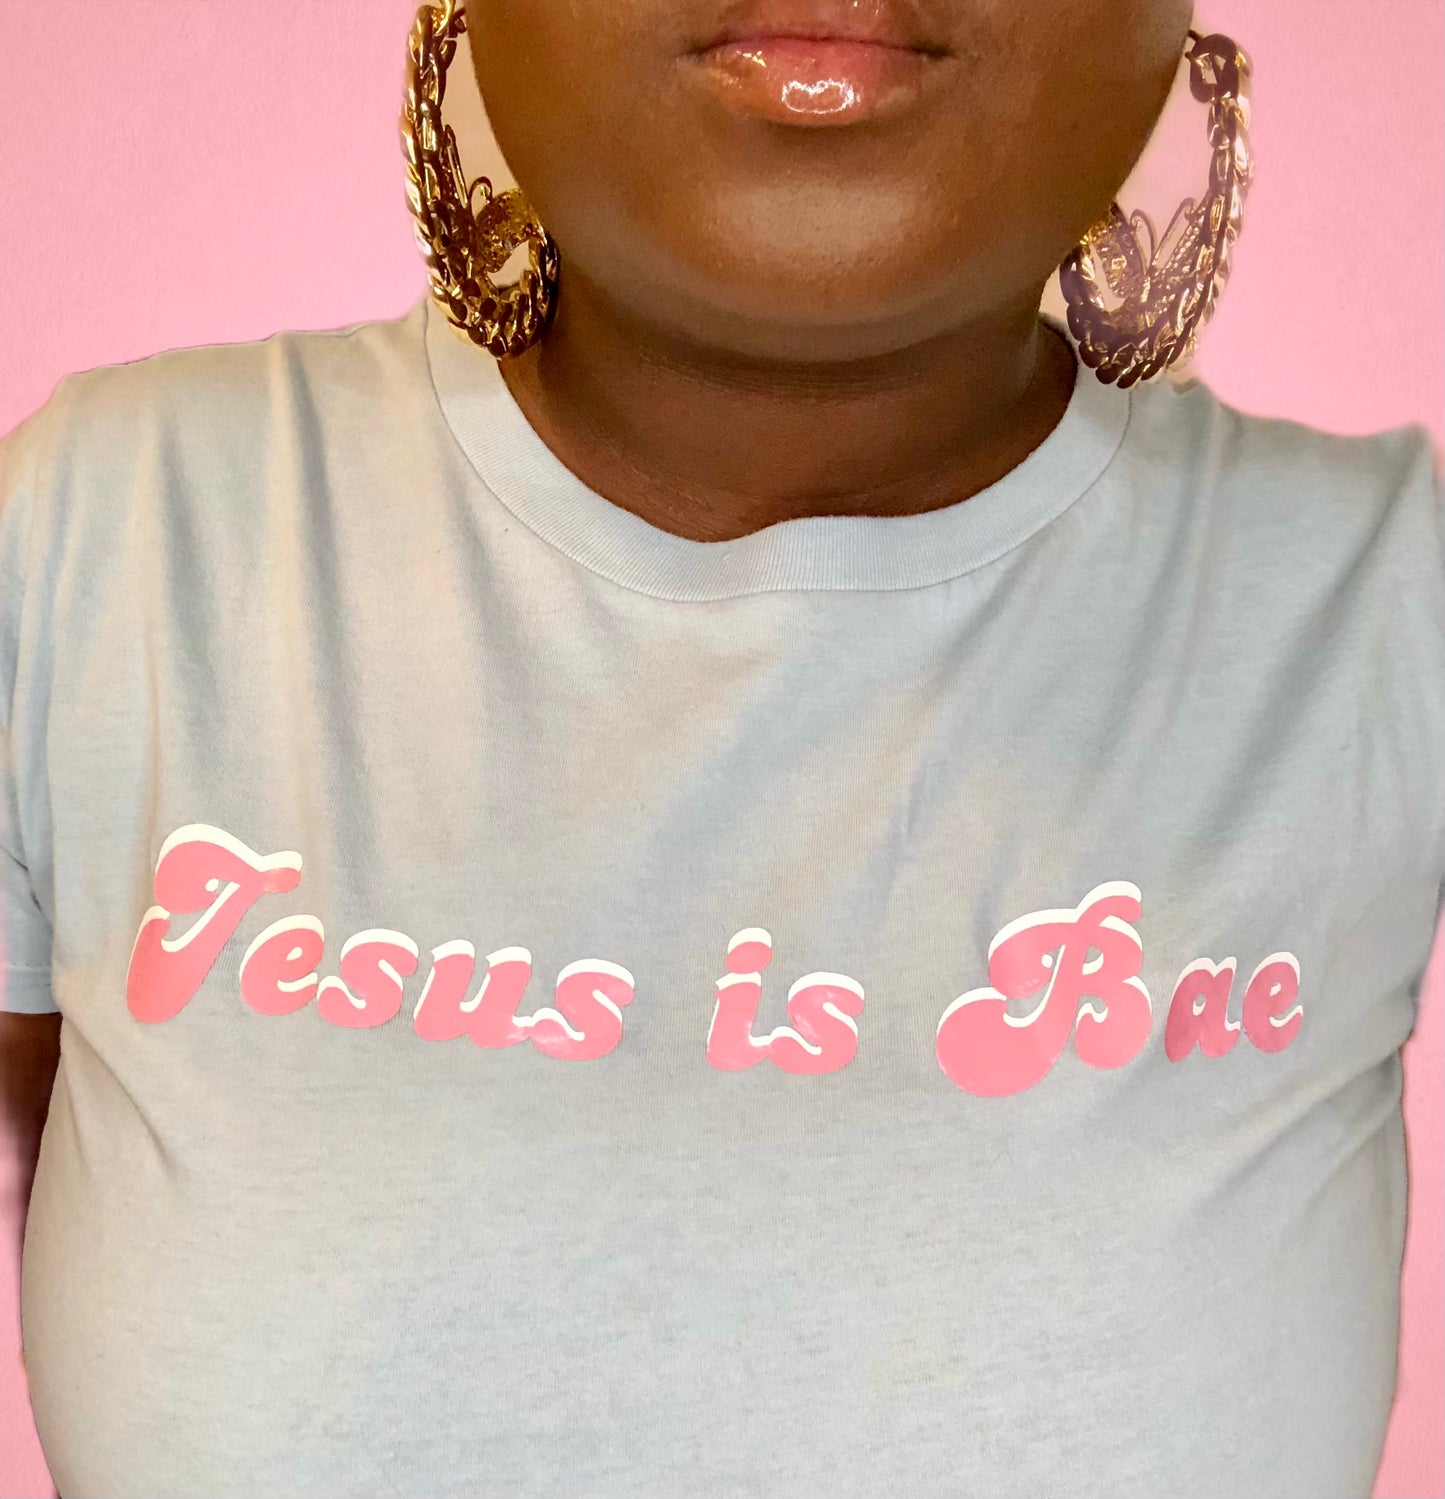 “Jesus is Bae” cropped tee